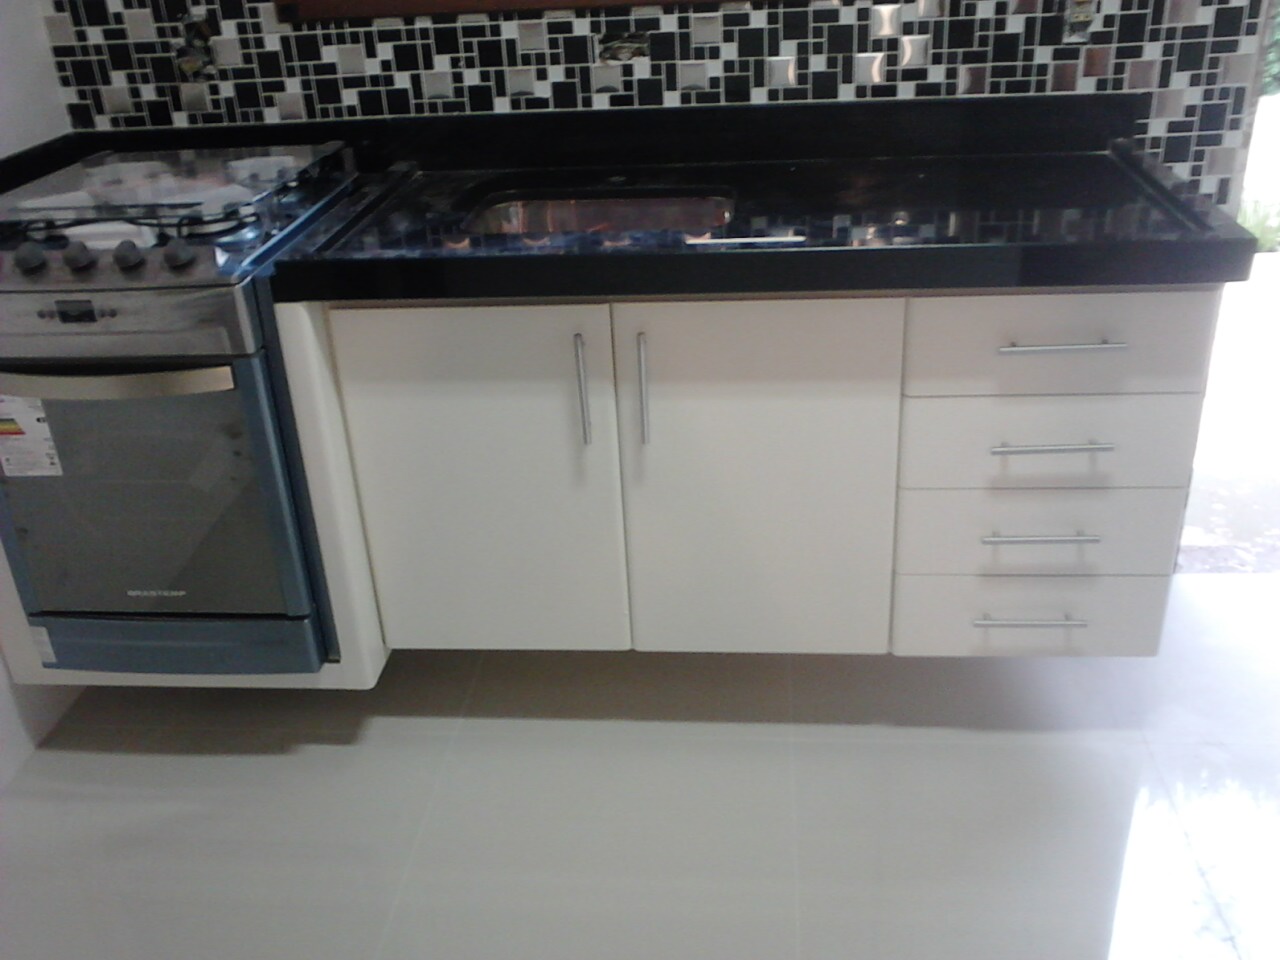 Gabinete para cozinha em fórmica branca acompanhando encaixe para fogão embutido suspenso na parede.